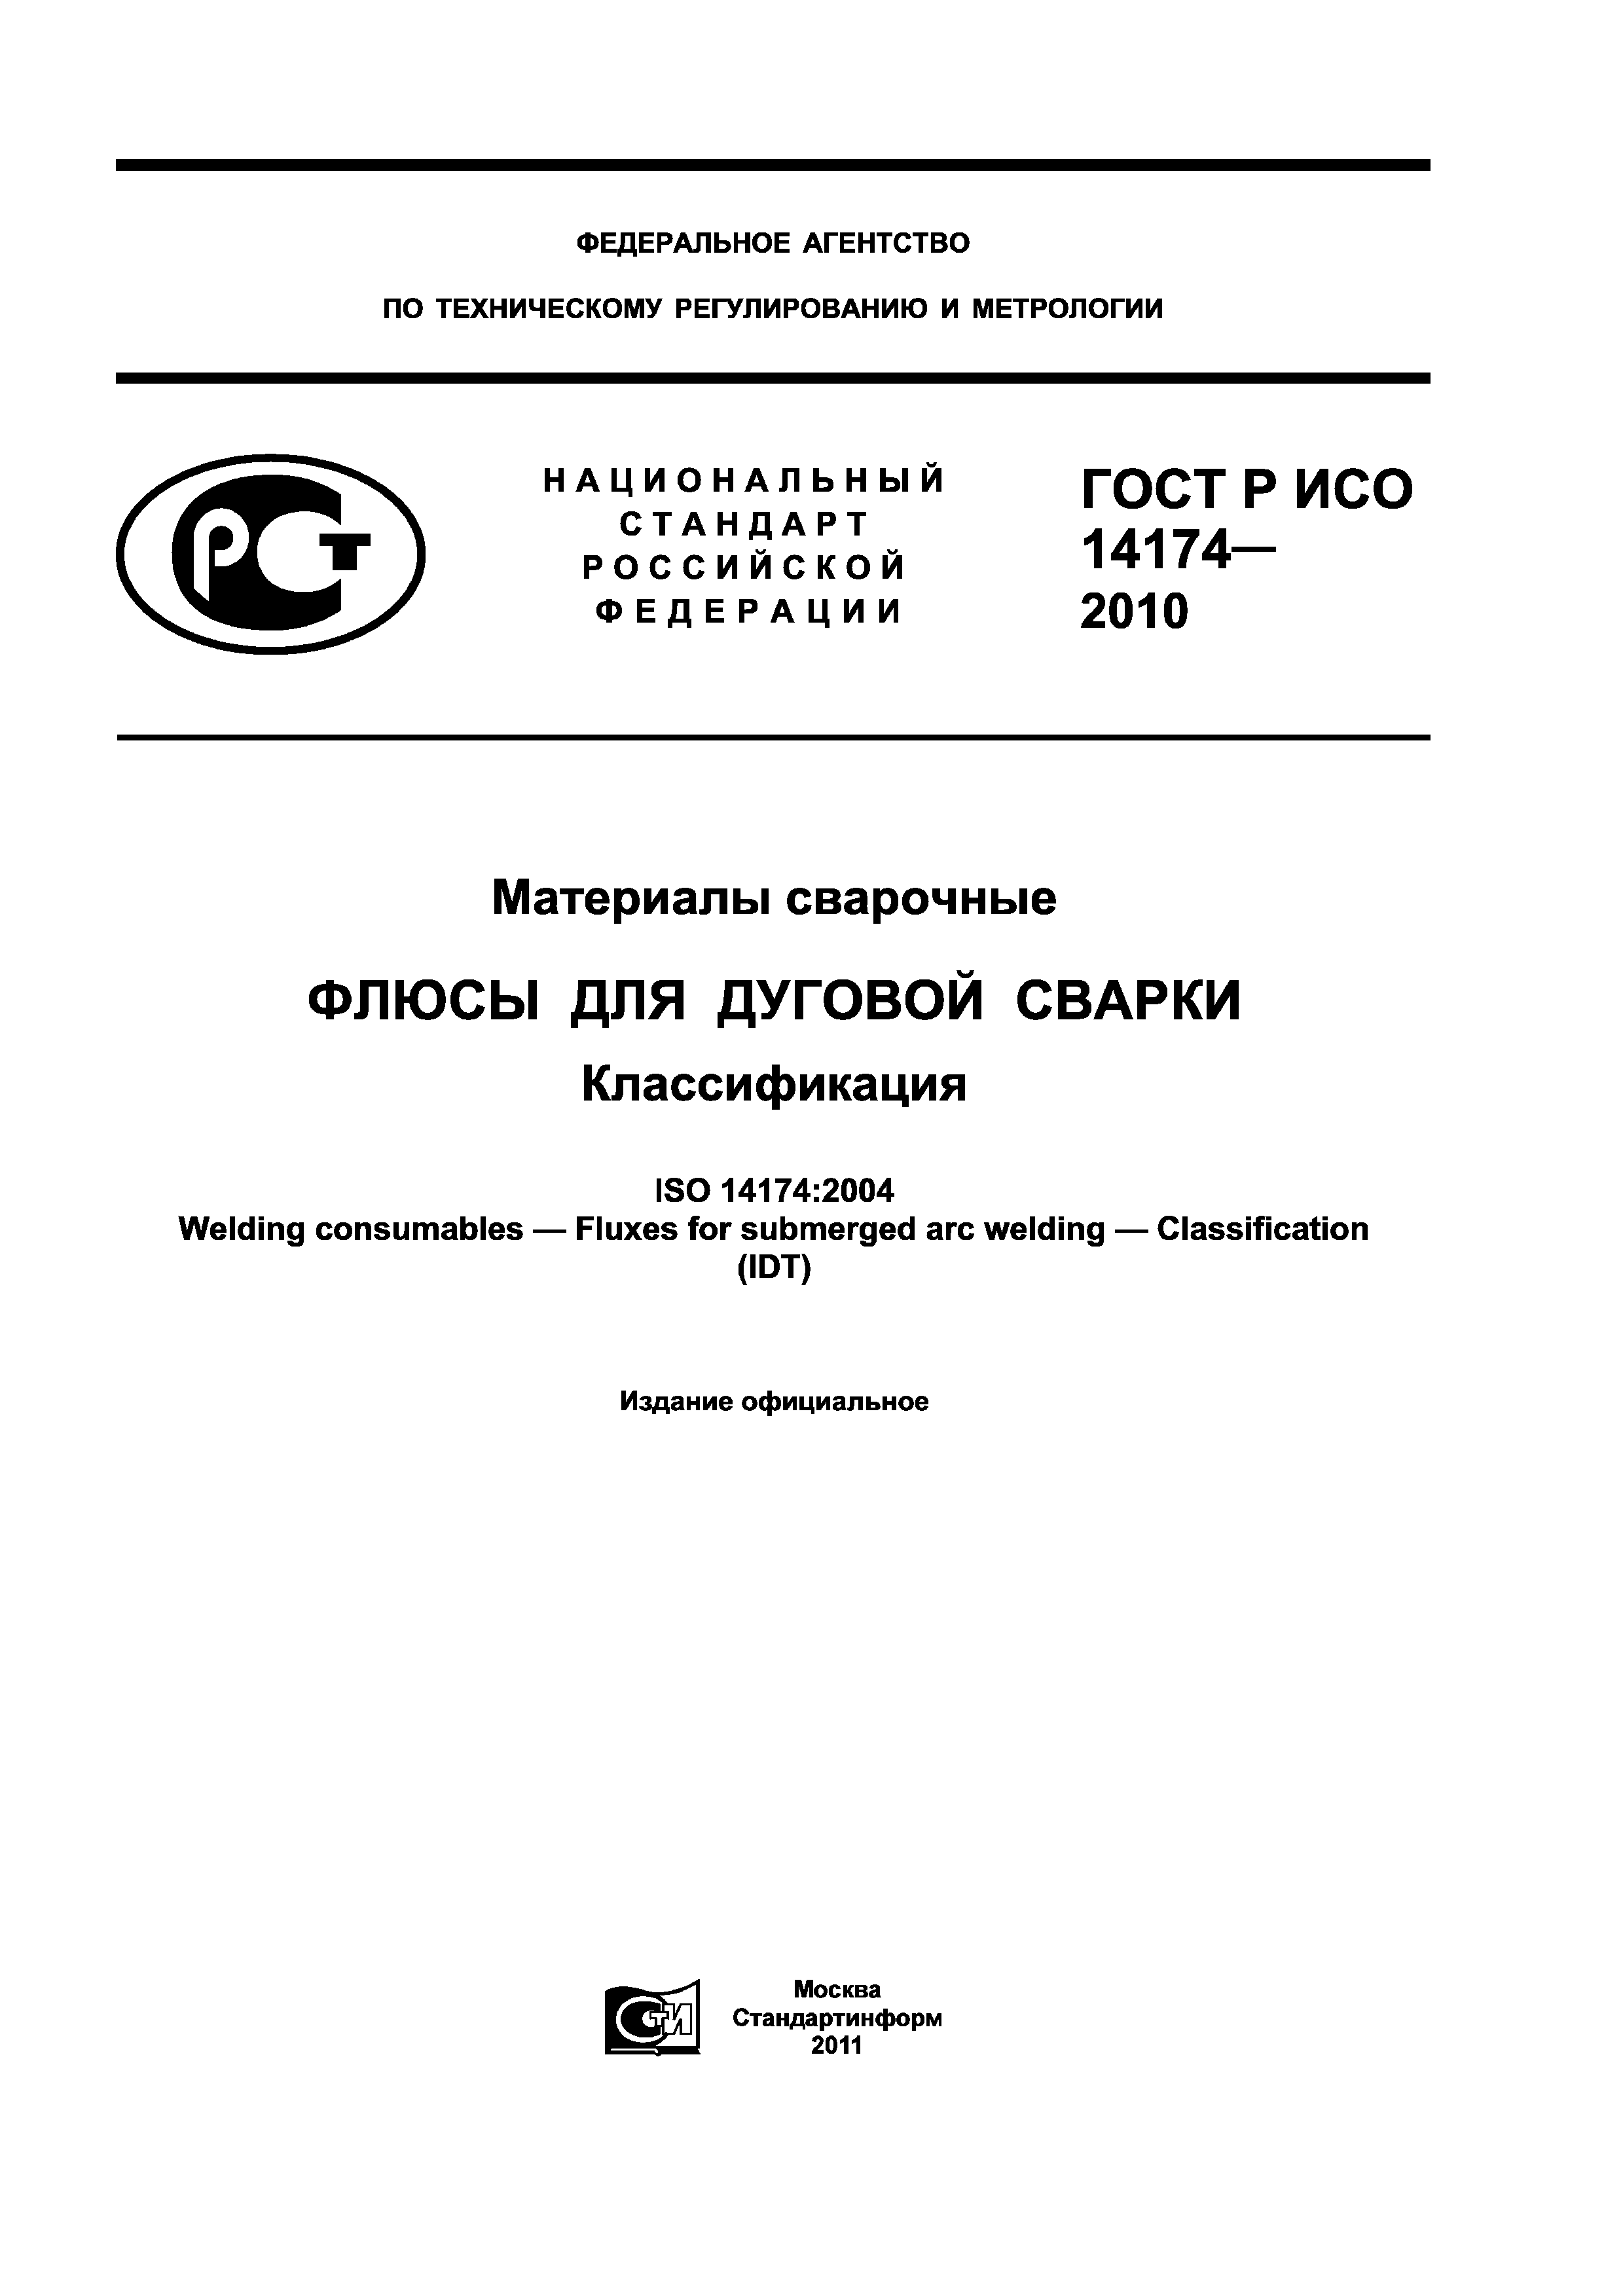 ГОСТ Р ИСО 14174-2010